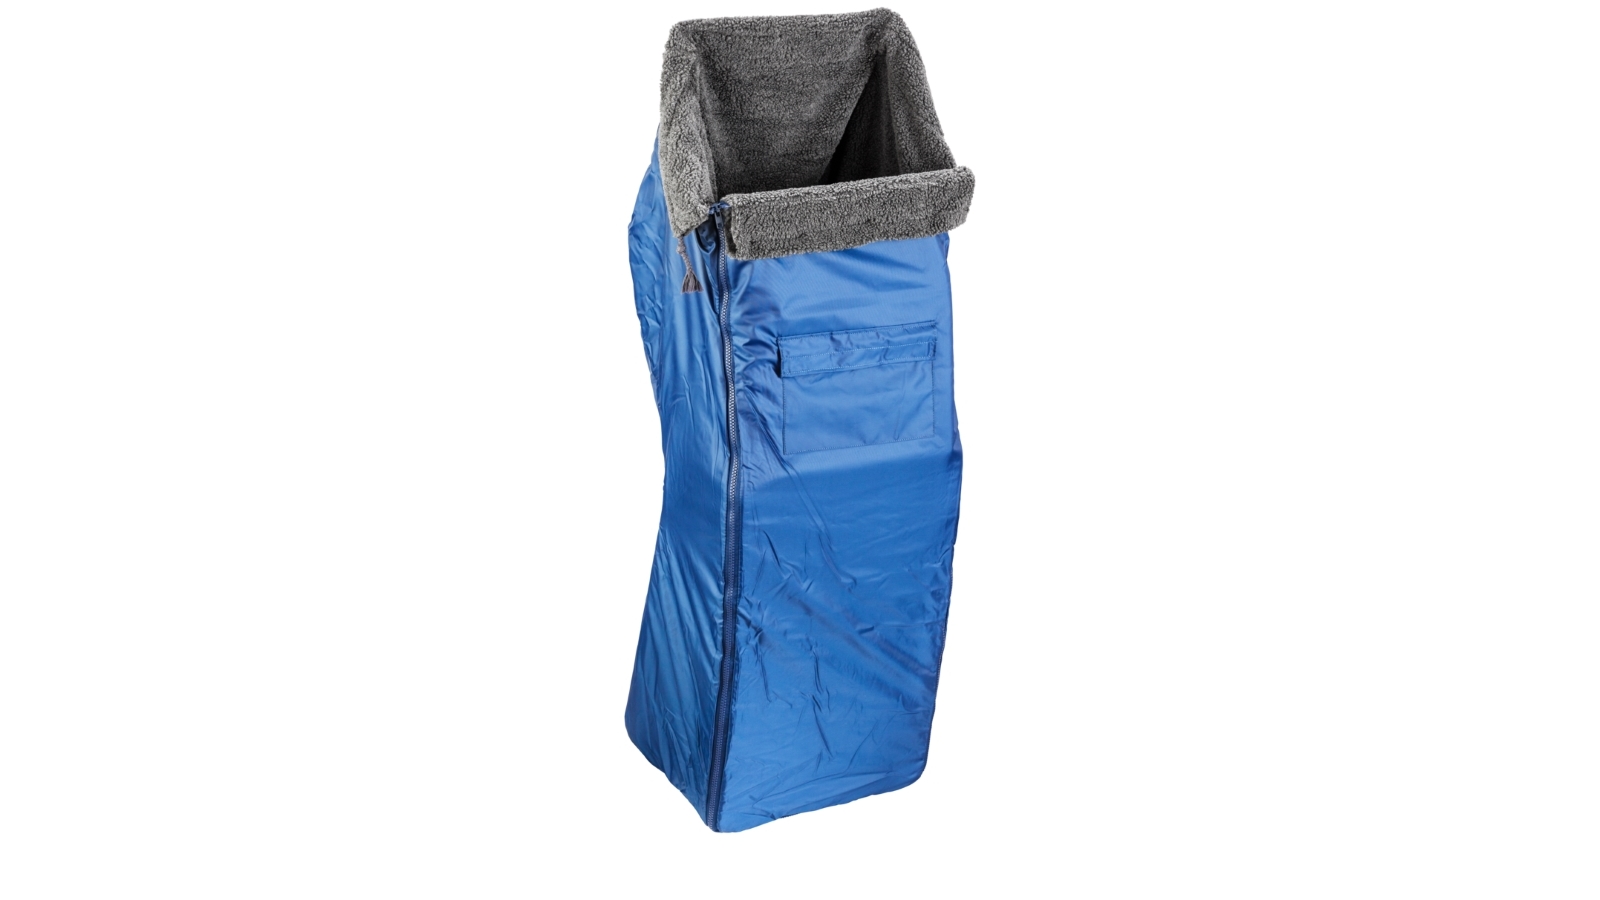 Abbildung Schlupfsack, blau, mit wasserabweisender Außenschicht und oben offen